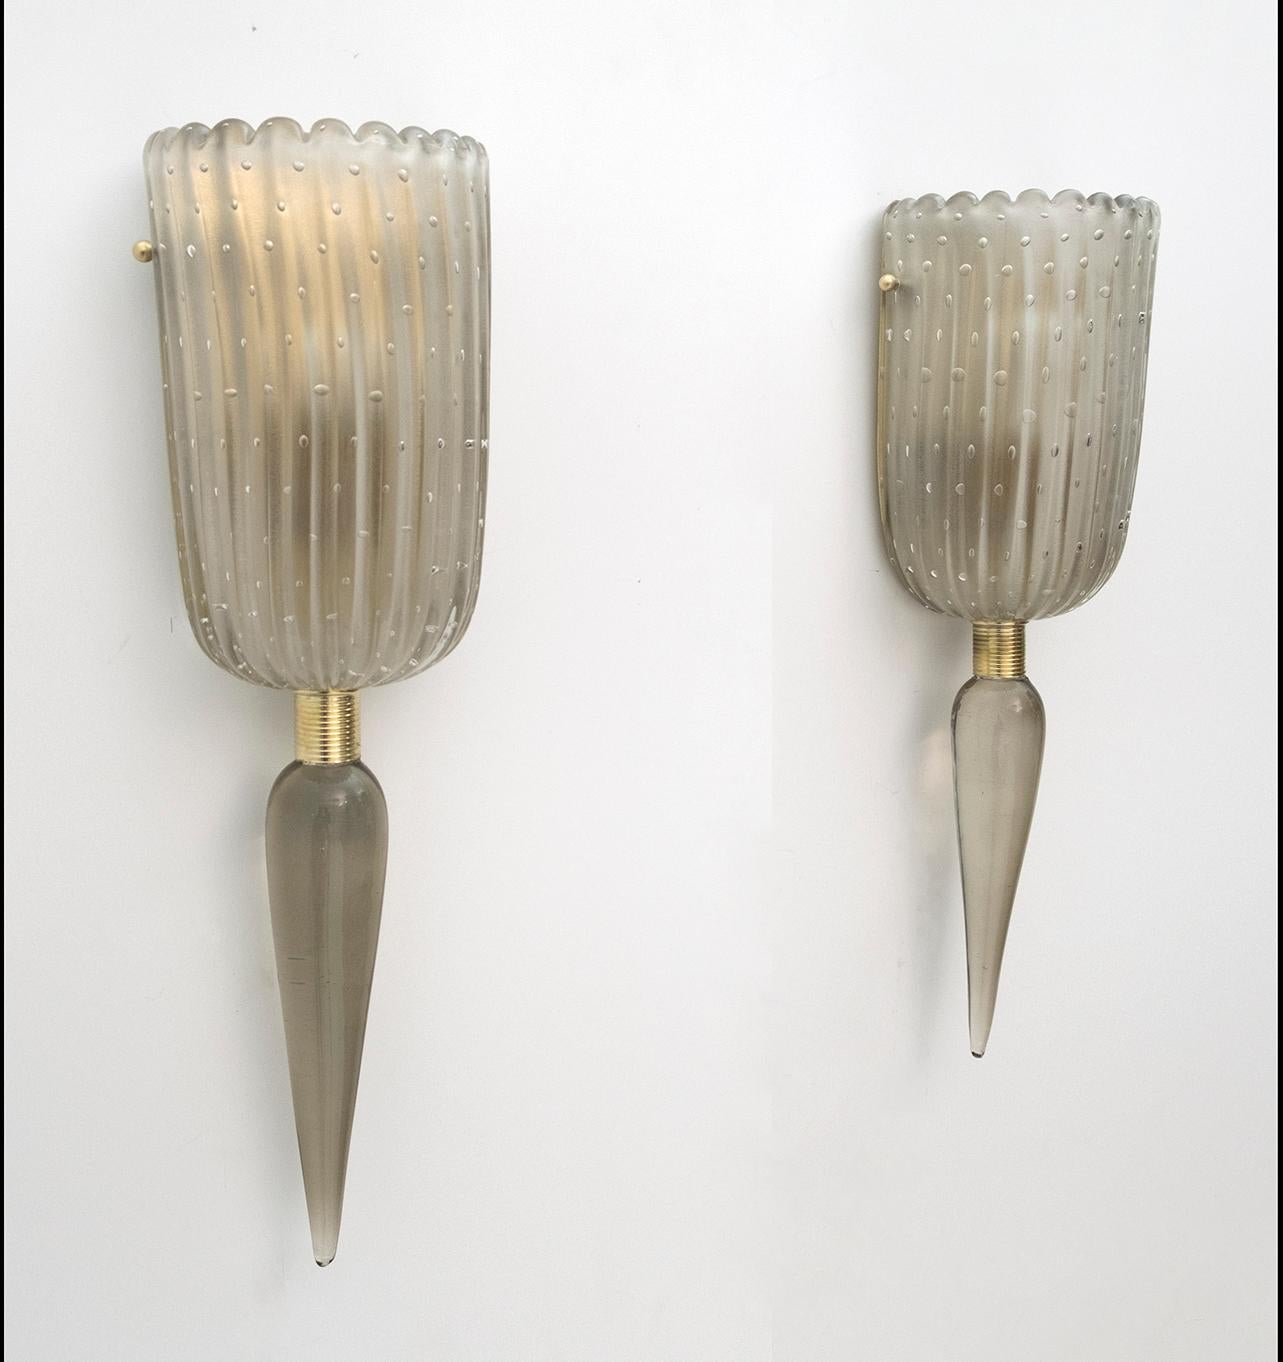 Paar moderne Murano-Glasleuchten aus der Mitte des Jahrhunderts, Barovier & Toso, Italien, 1980er Jahre. Die Wandleuchten haben Messinghalterungen; Murano-Glas wird mit der Technik des Einschlusses von Luftblasen bearbeitet. Die Wandleuchter haben